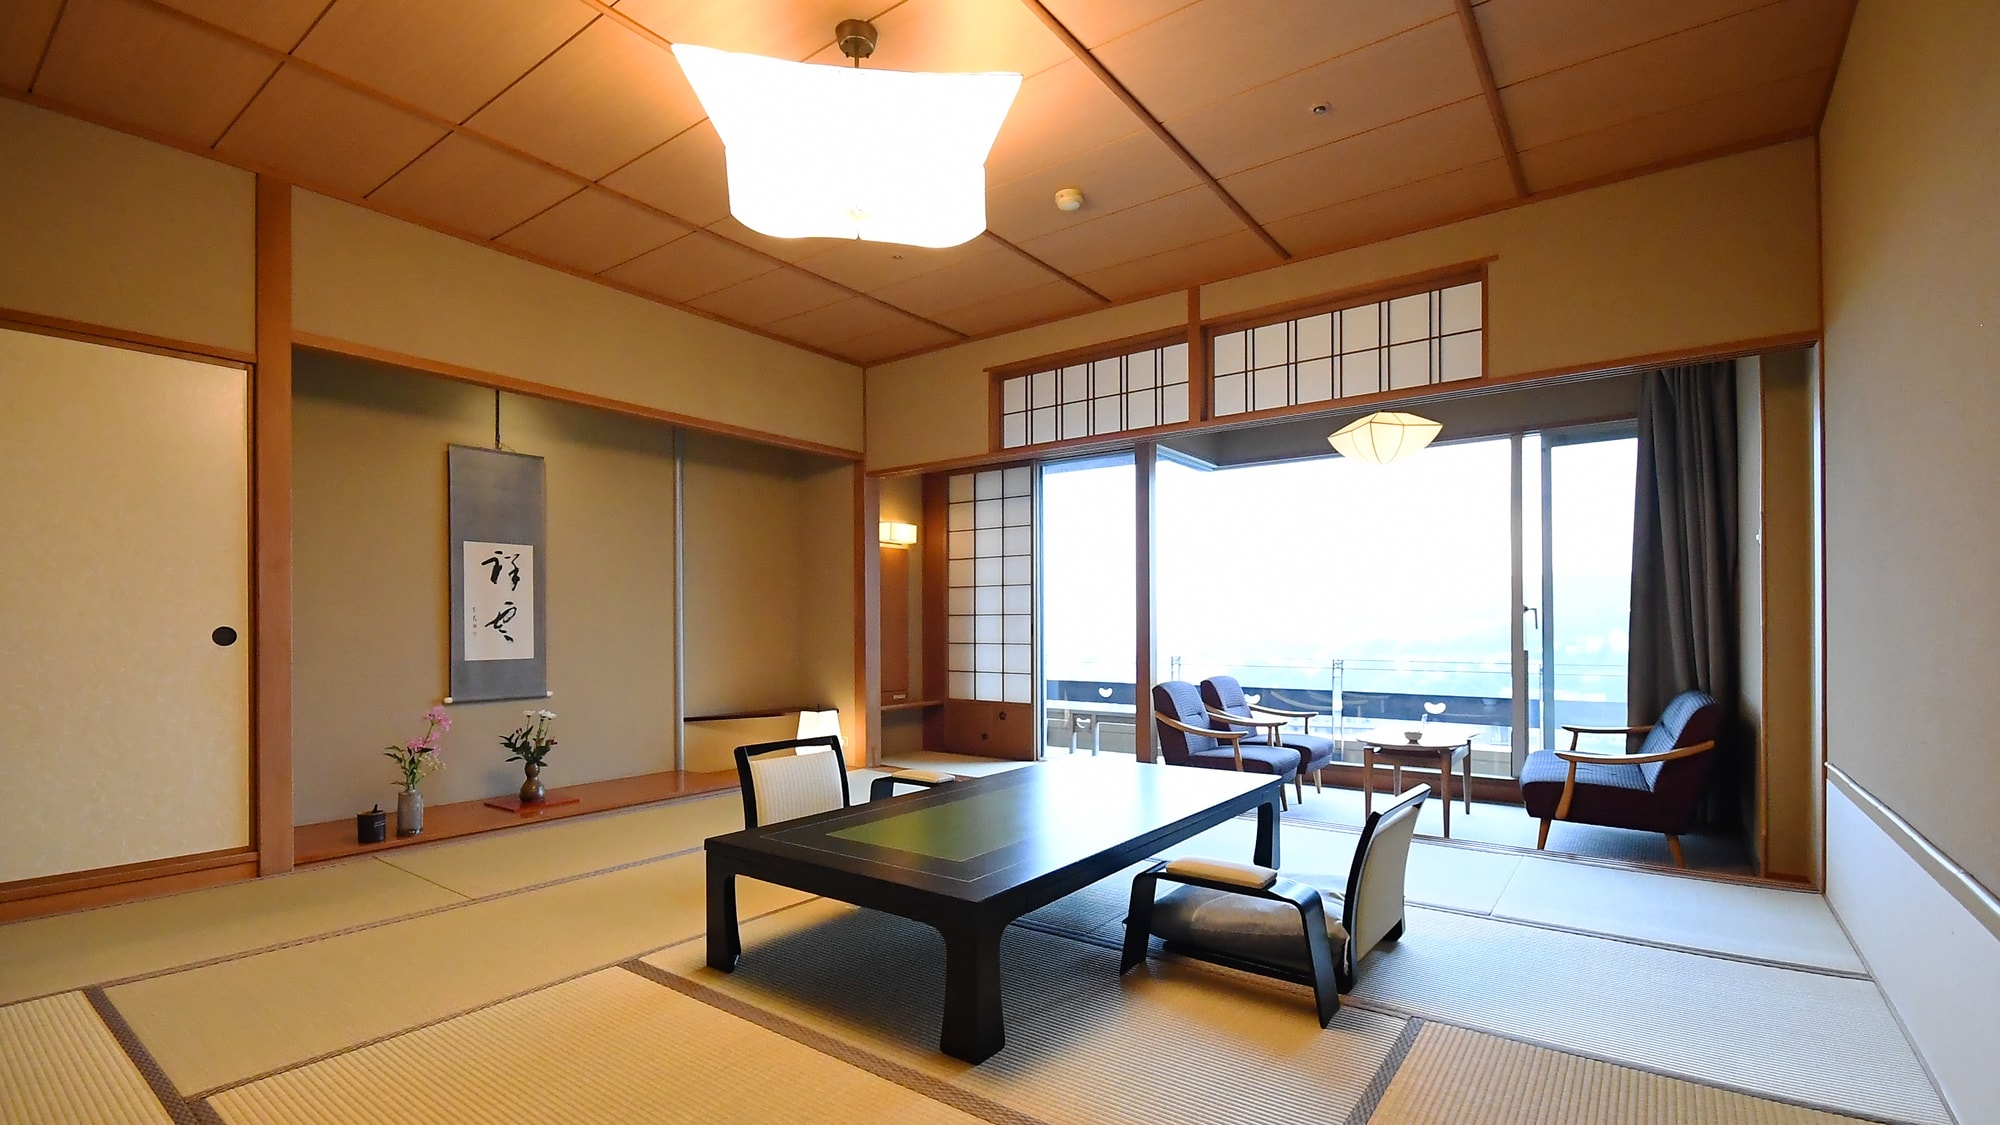 客房42间，以12.5张榻榻米的日式客房为主。我们有9间带温泉露天浴池的客房。